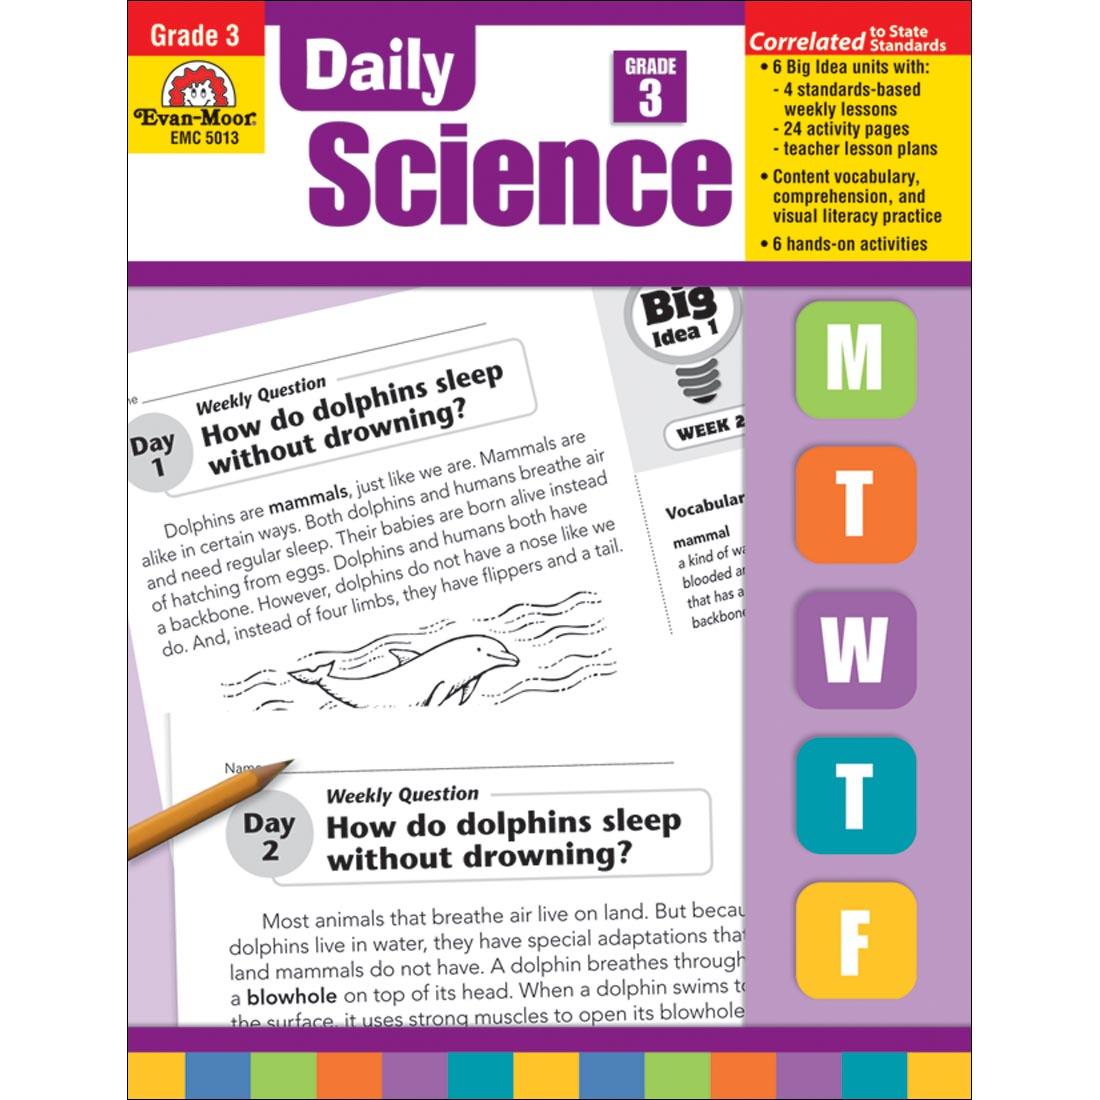 Daily Science Book by Evan-Moor Grade 3